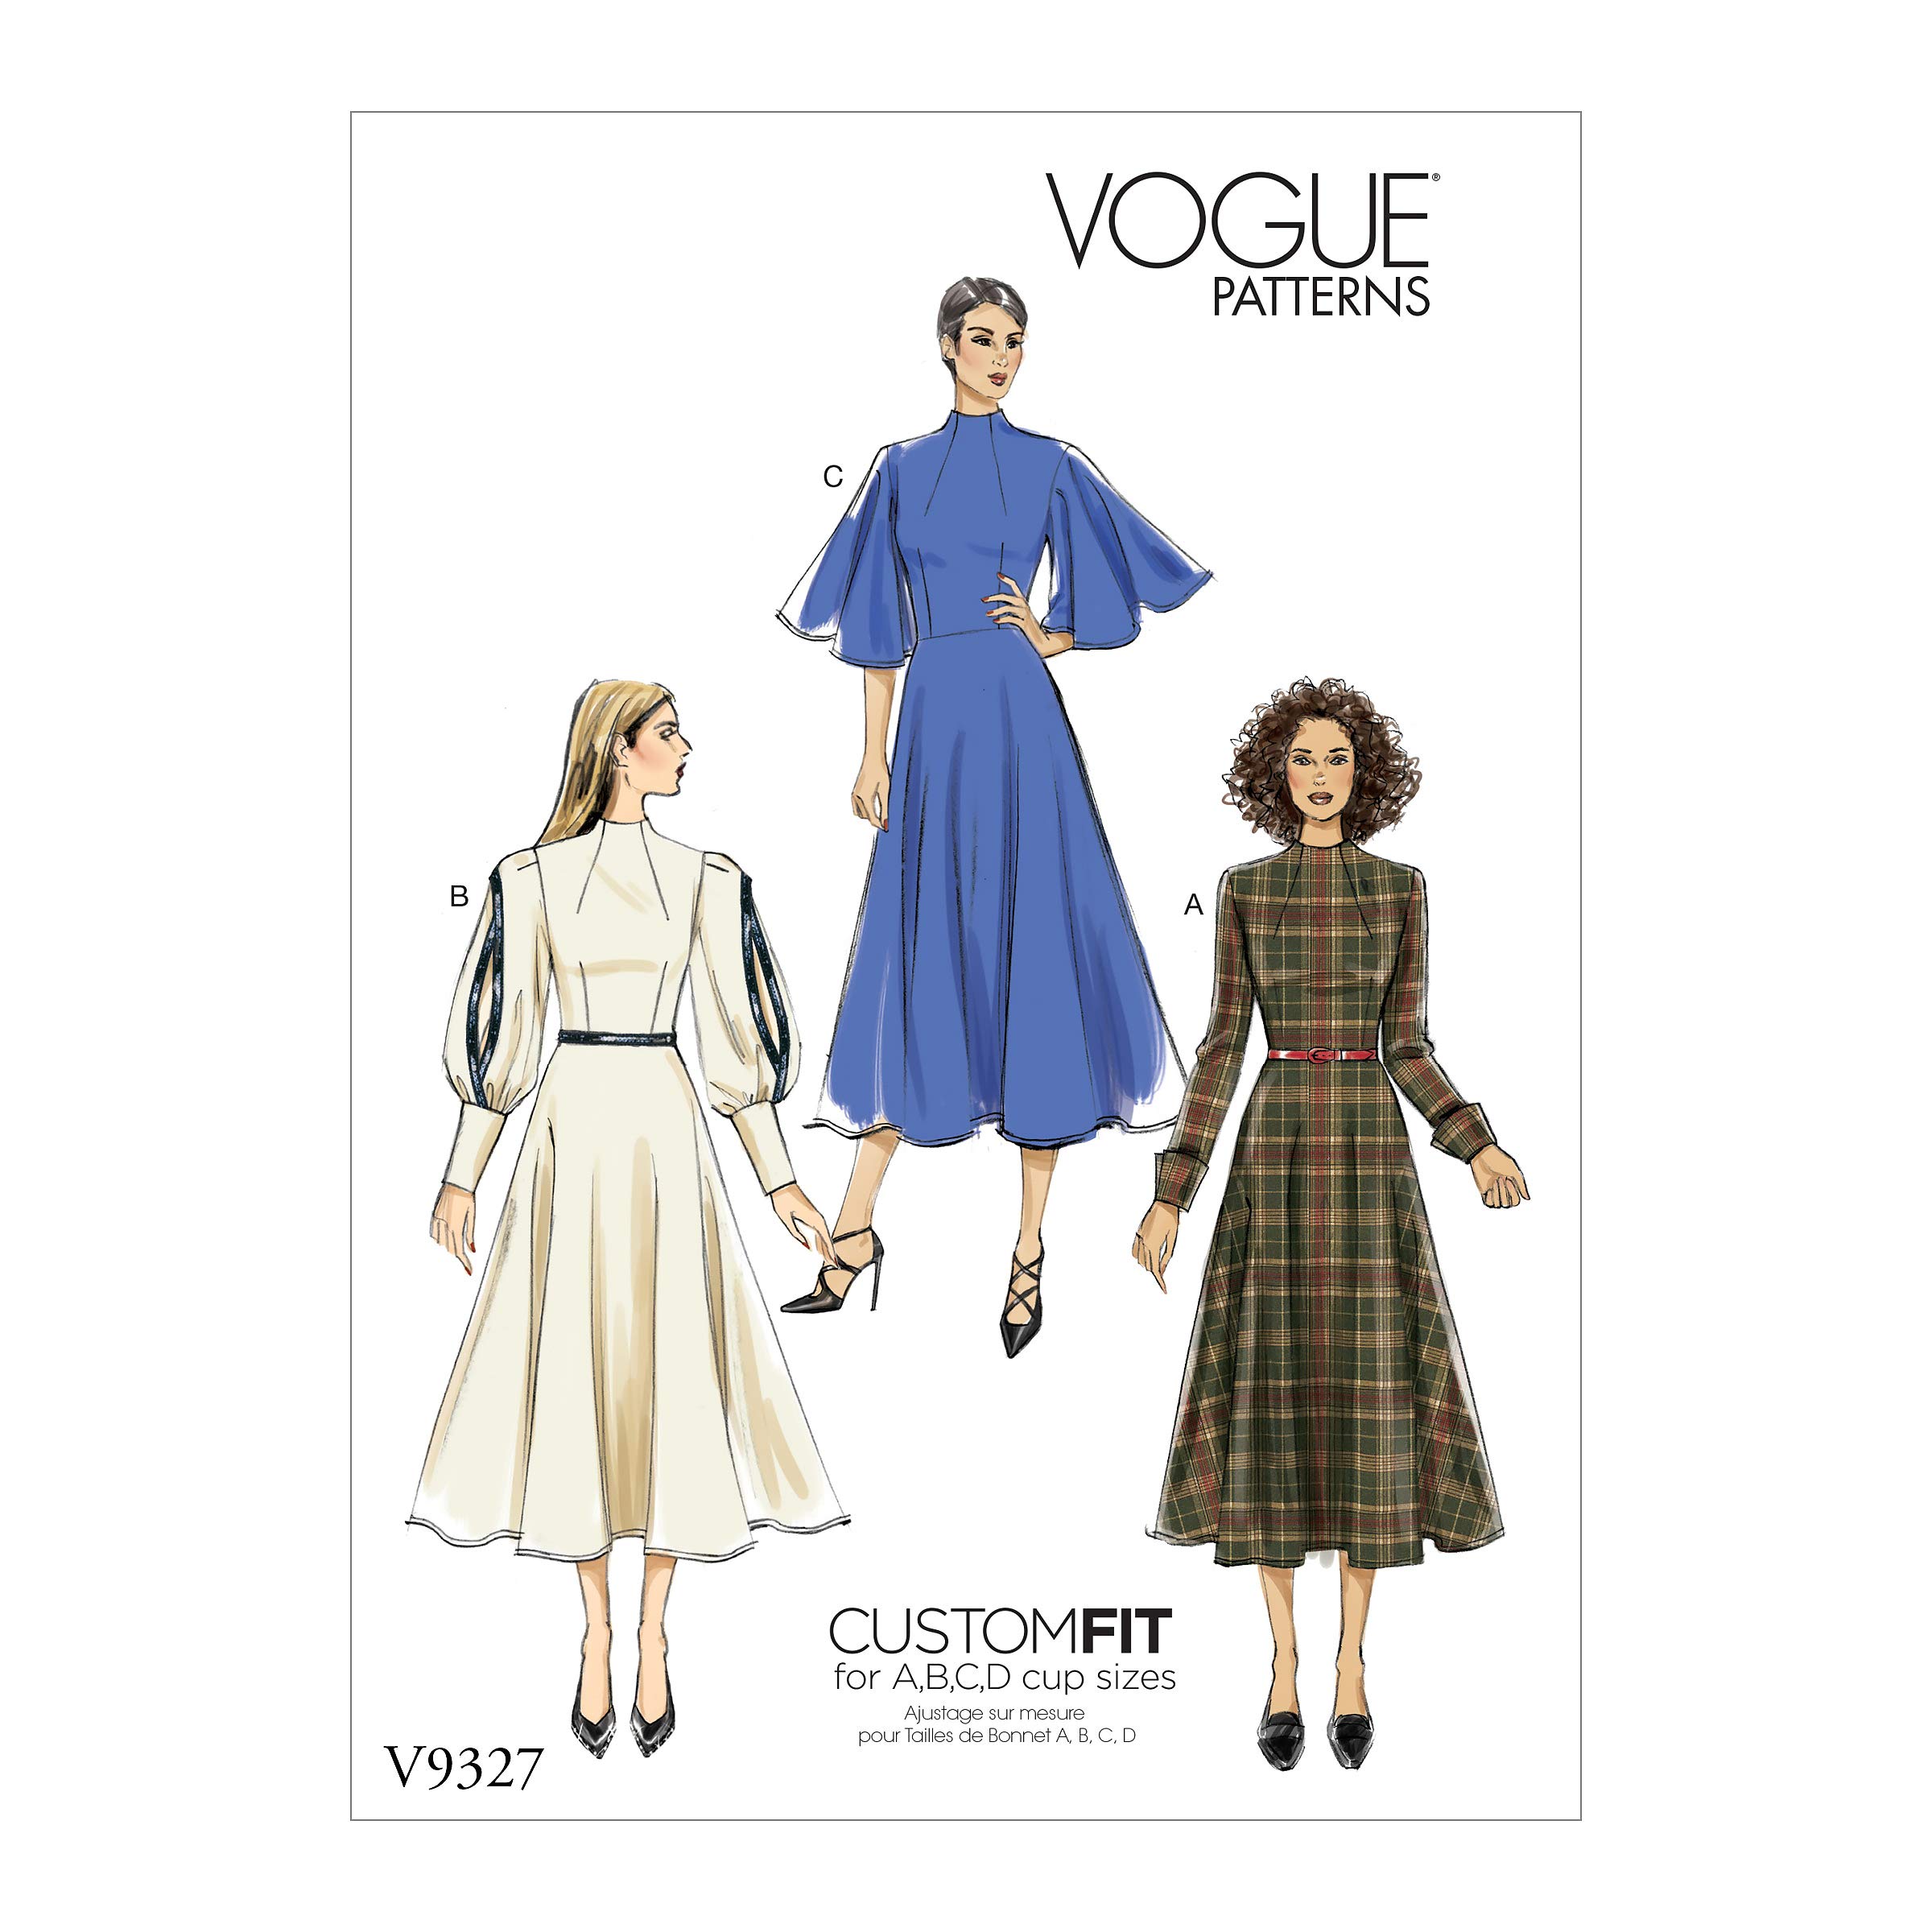 Vogue Patterns V9327A5 V9327, Vogue, nähen, Muster, vorlage, Papier Taschentuch, weiß, 6-8-10-12-14